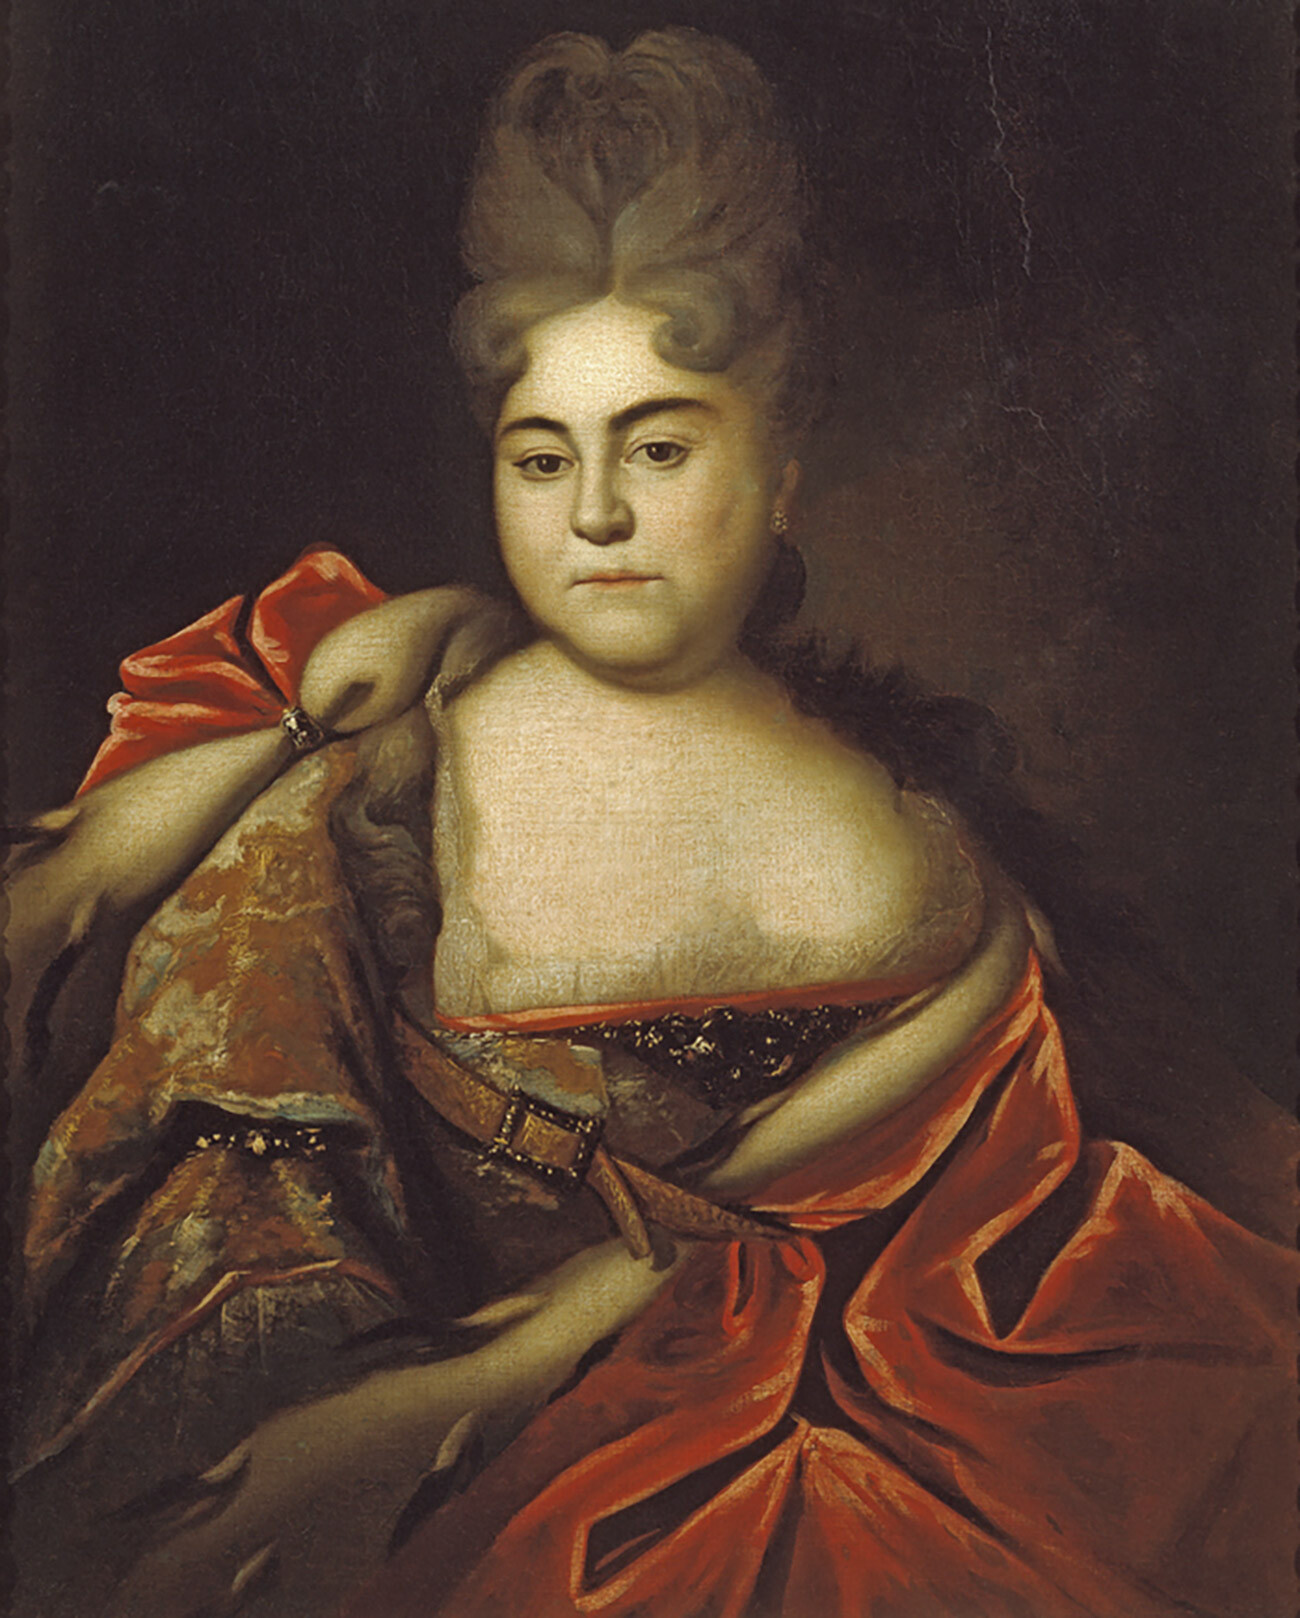 Ritratto della principessa Natalja Alekseevna (1673-1716)

